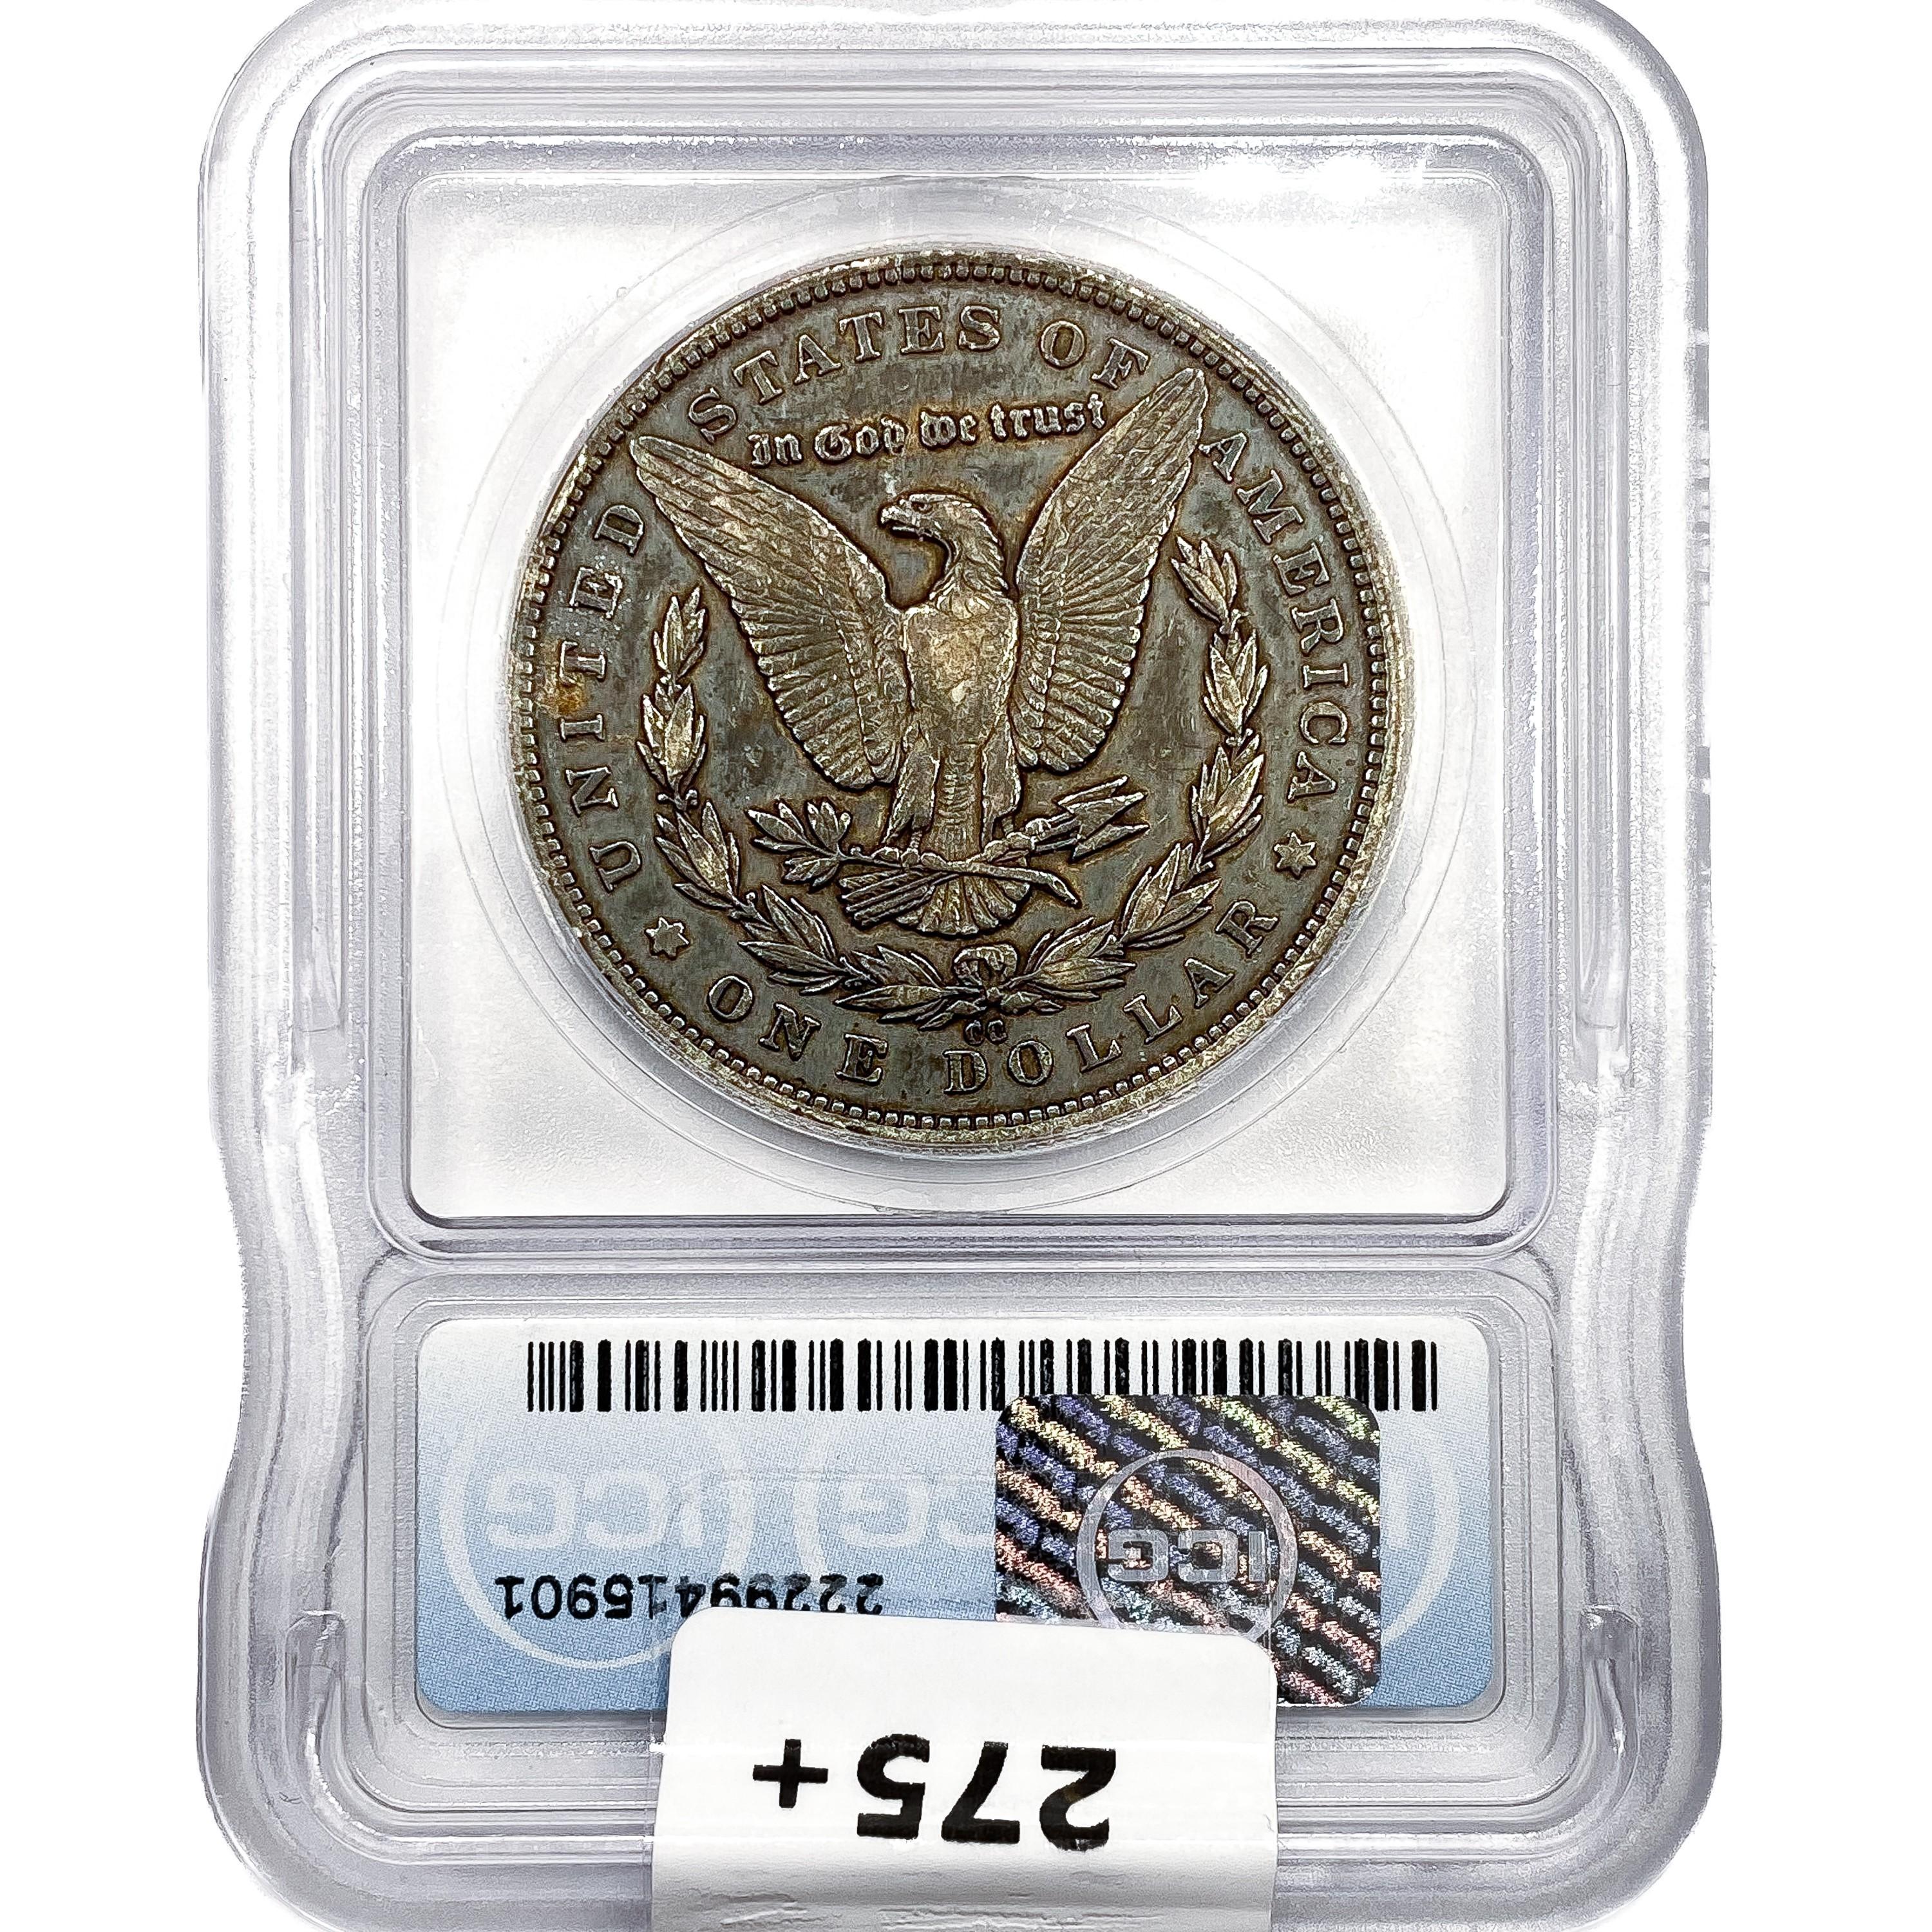 1879-CC Morgan Silver Dollar ICG EF40